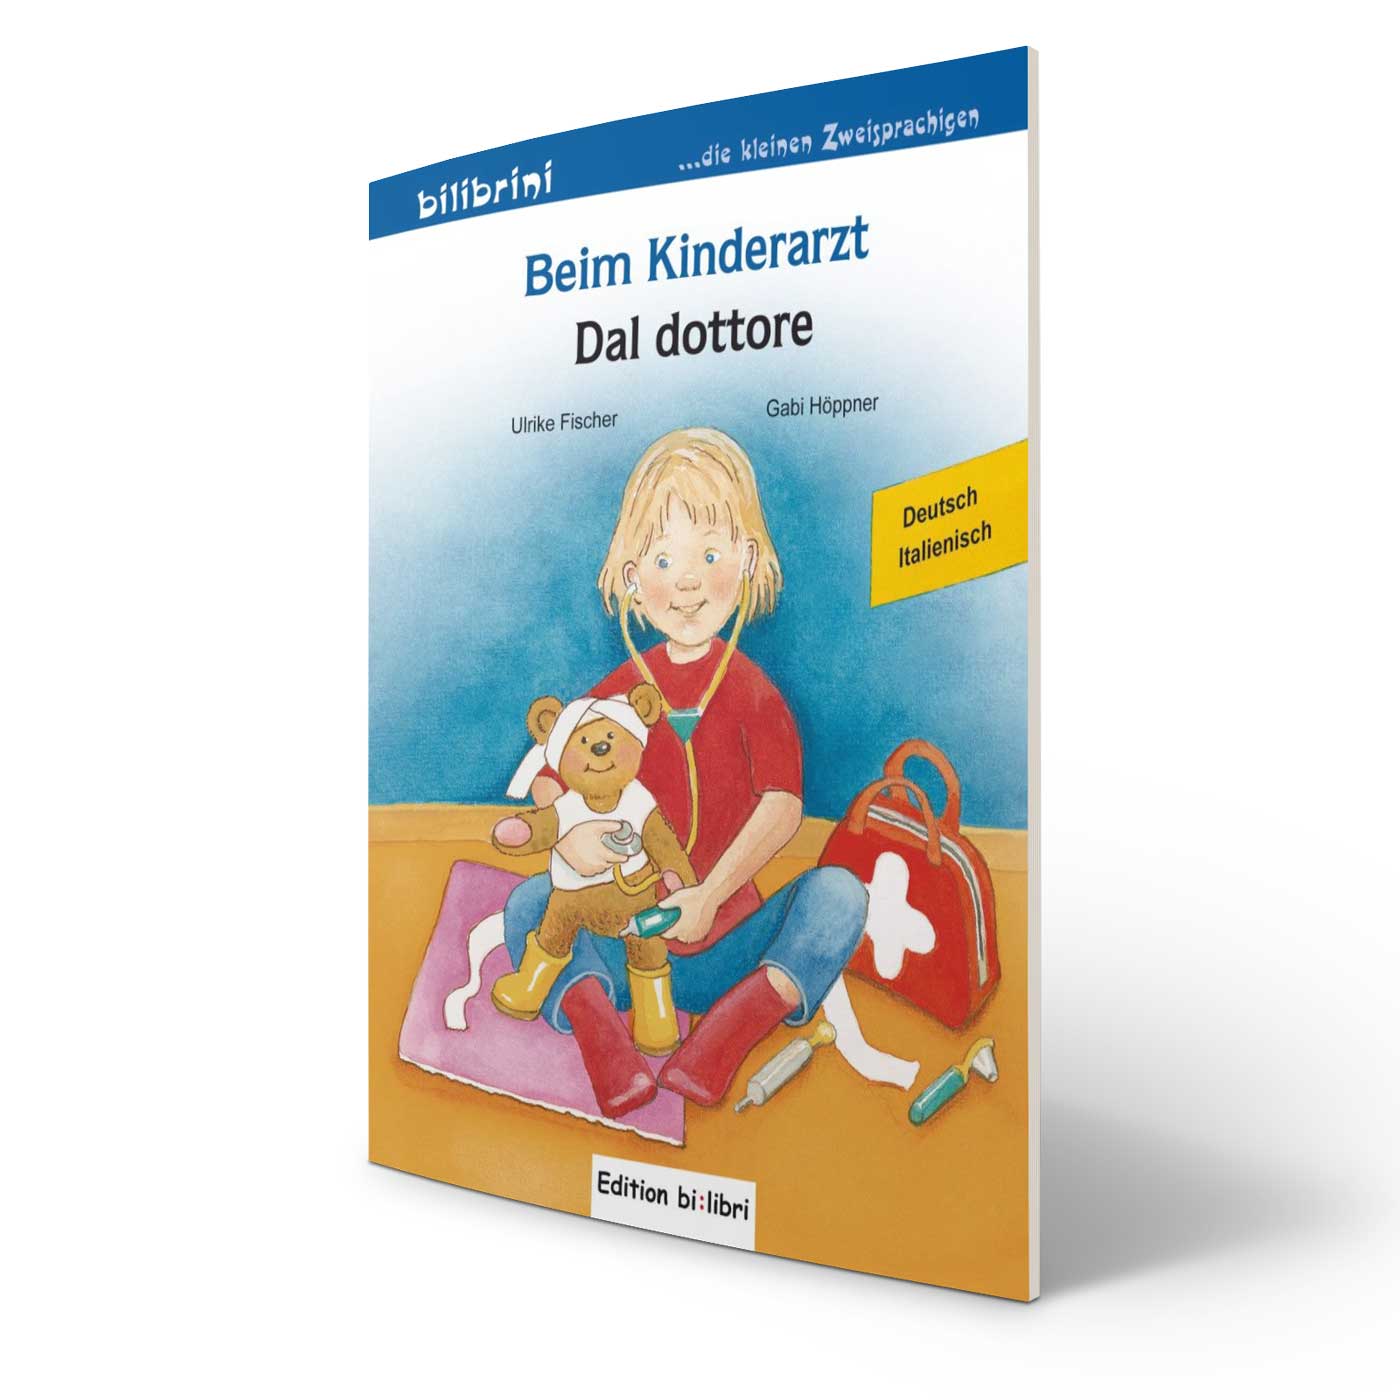 Kinderbuch Bilderbuch zweisprachig deutsch-italienisch lernen für Kinder Auswahl 